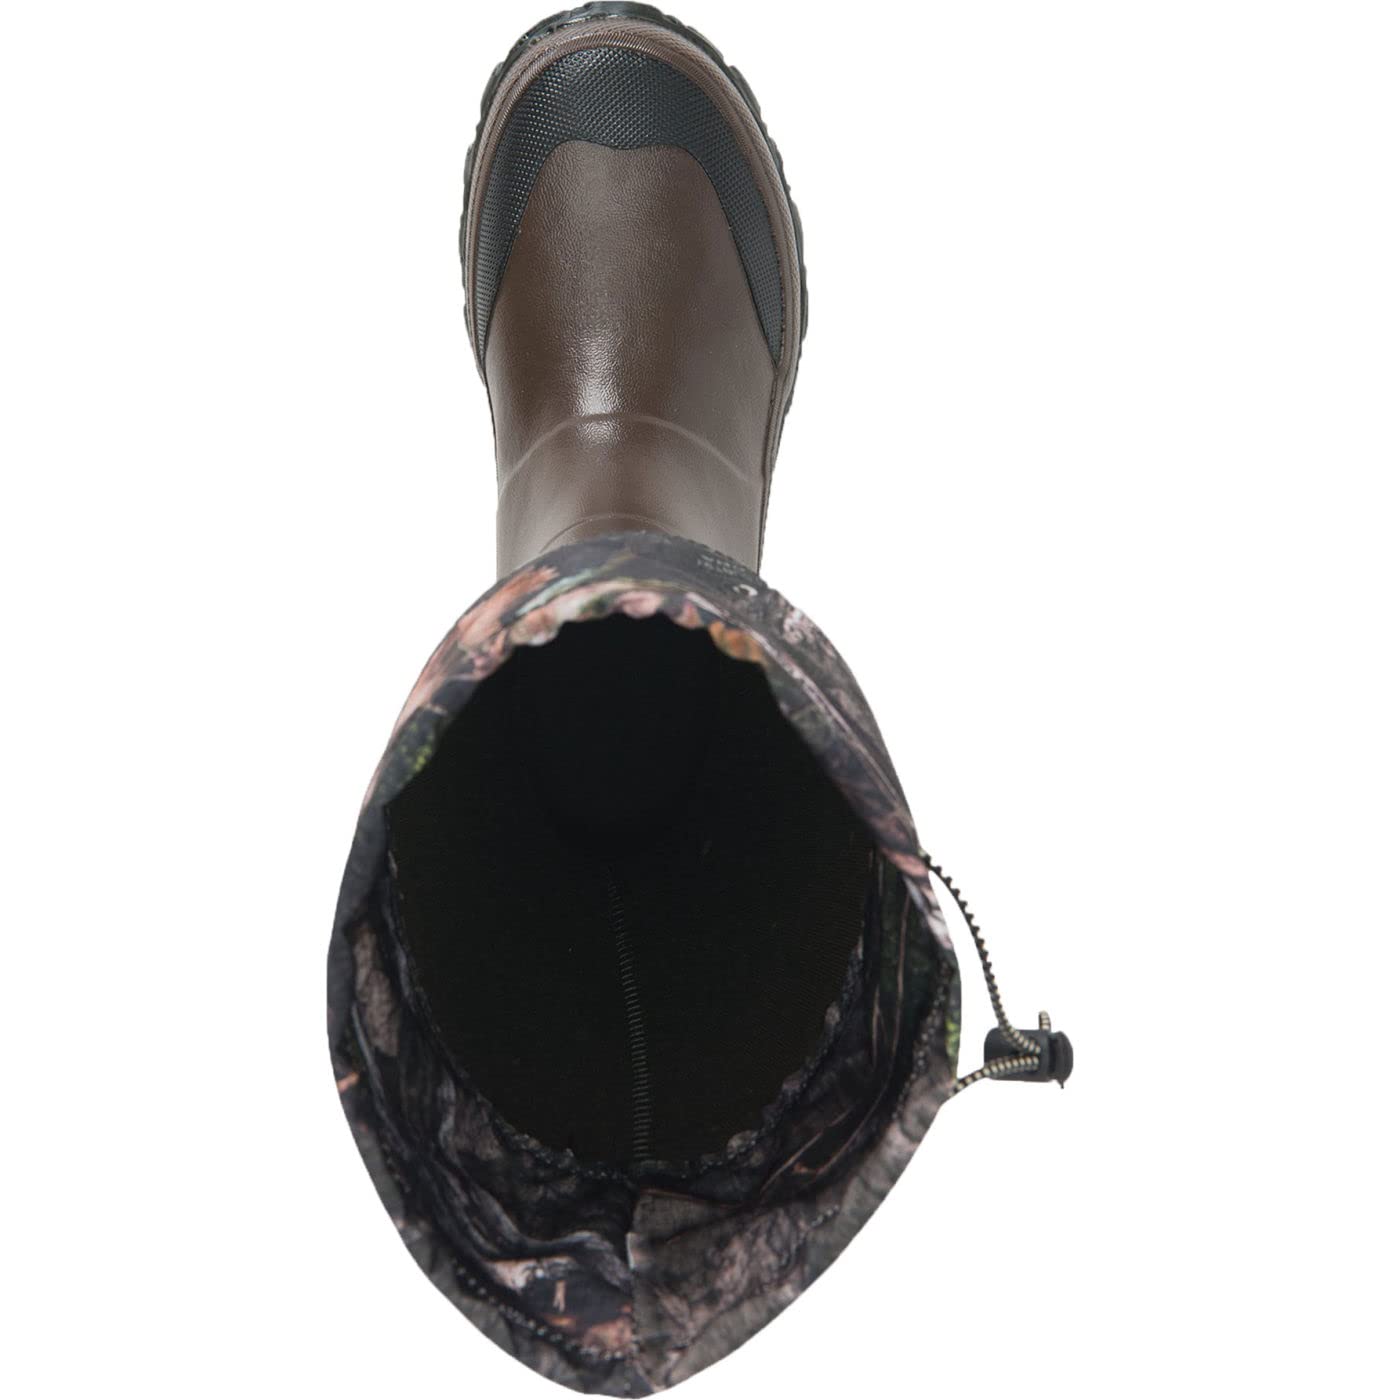 Muck Boot Unisex-Adult Forager Waterproof Lightweight Wellington Rain Tall Rubber Garden Boots Outdoors Equipment